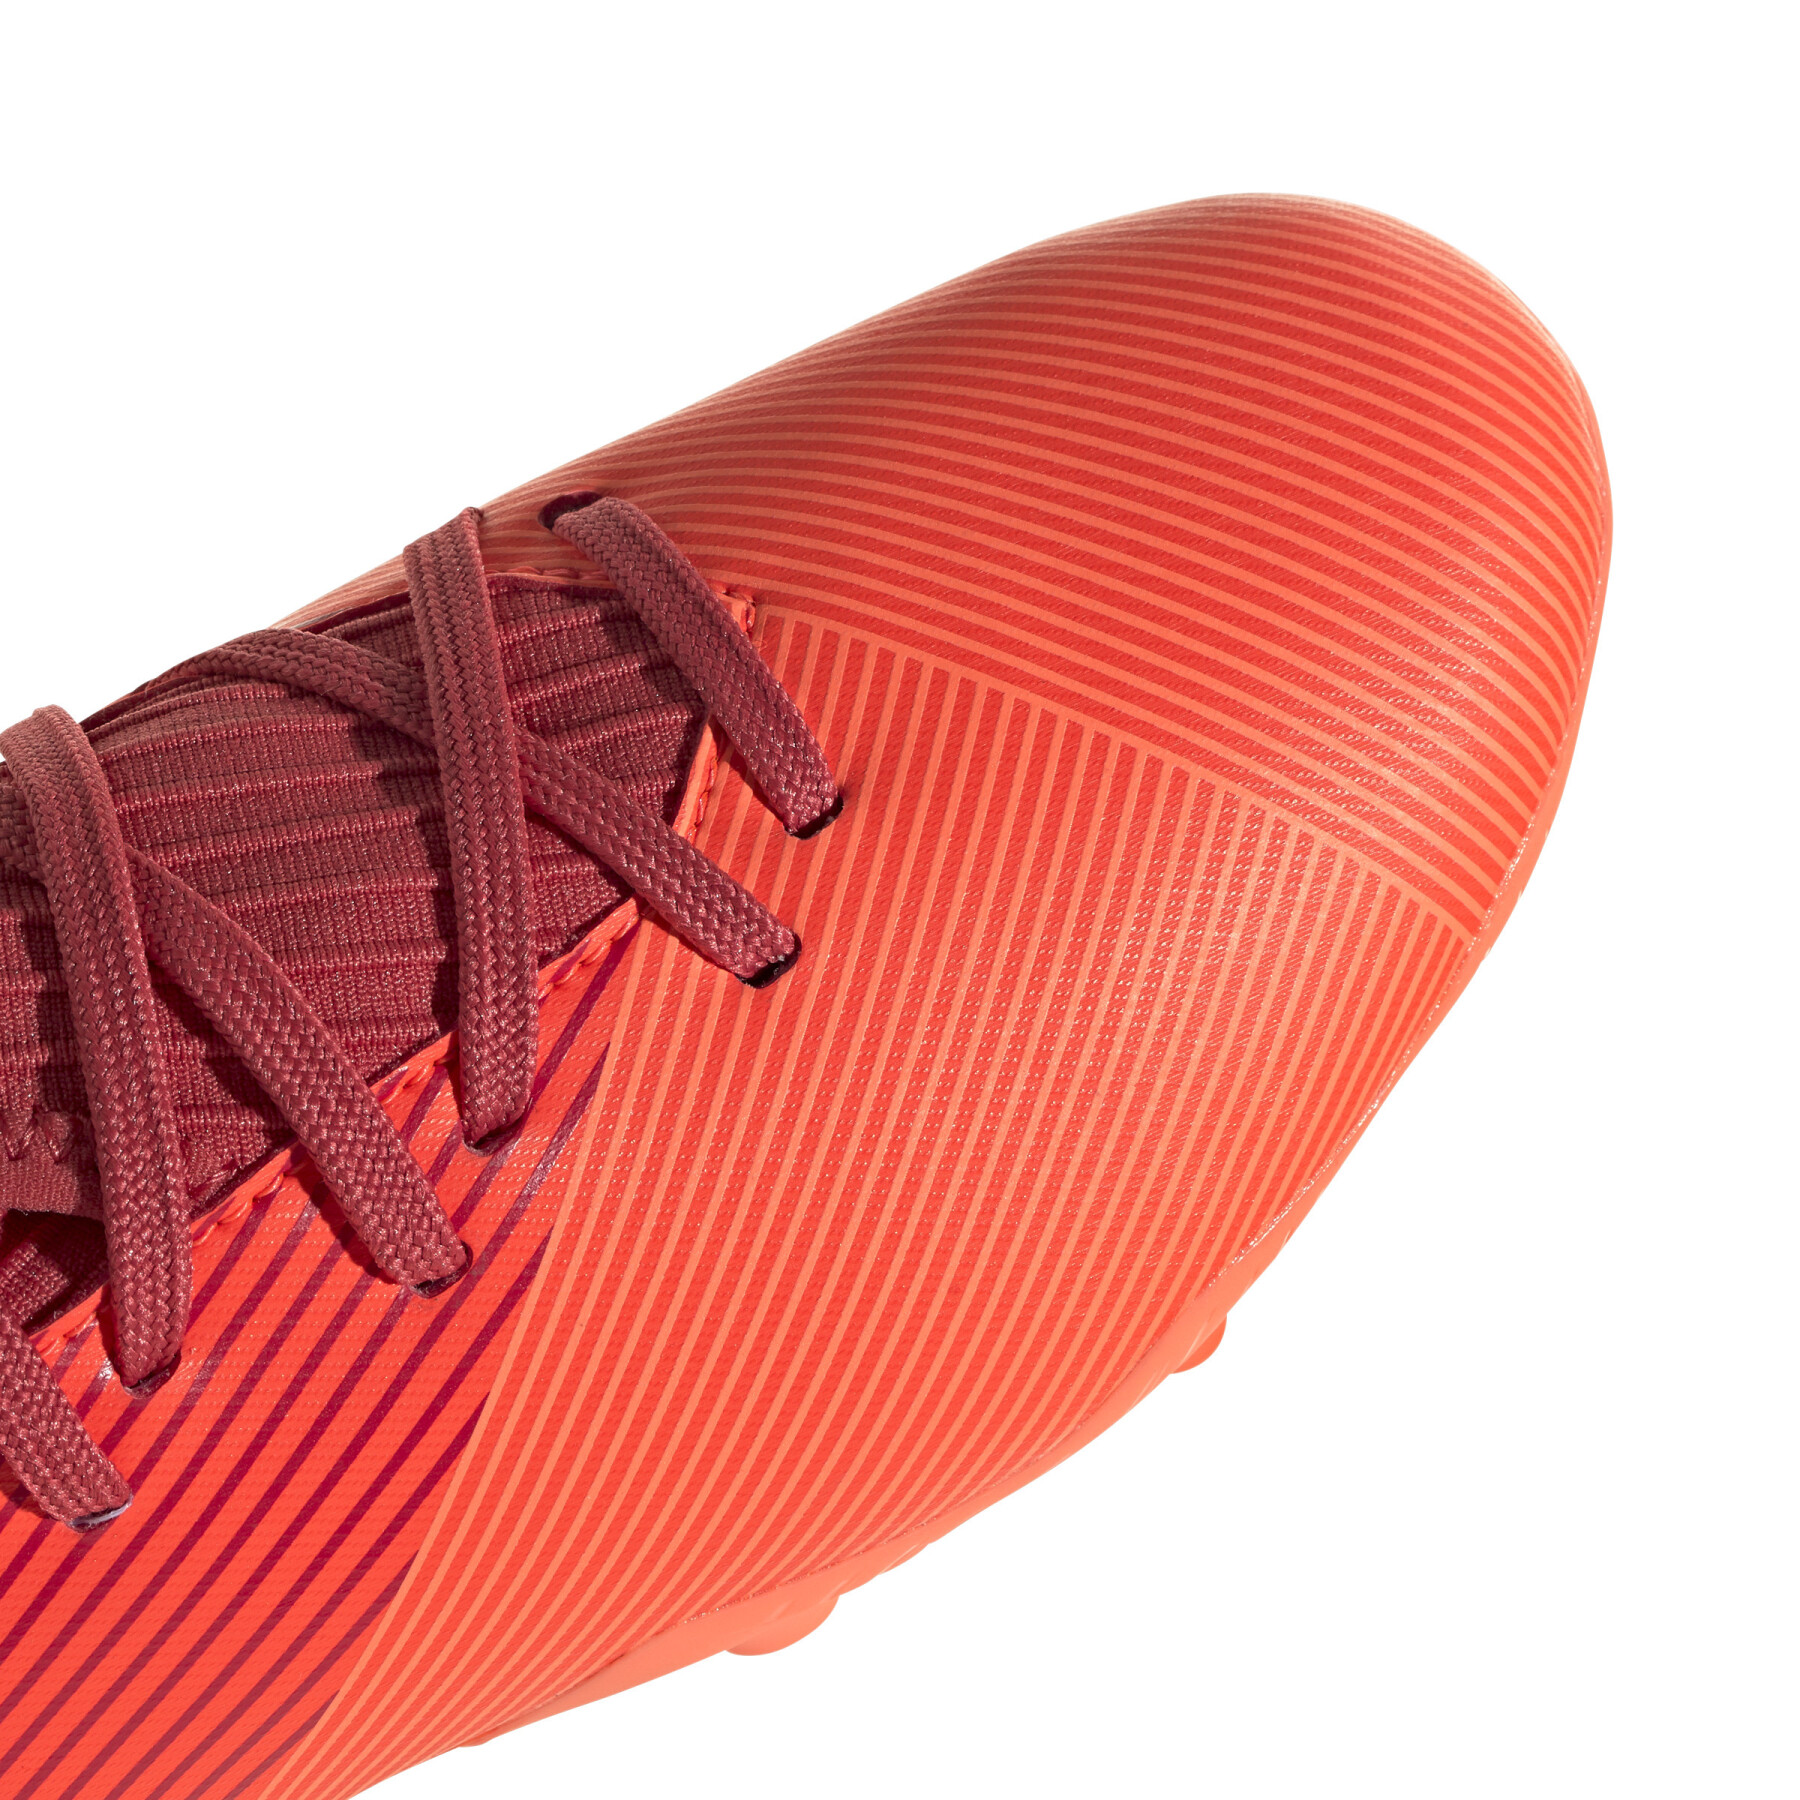 Dziecięce buty piłkarskie adidas Nemeziz 19.3 FG